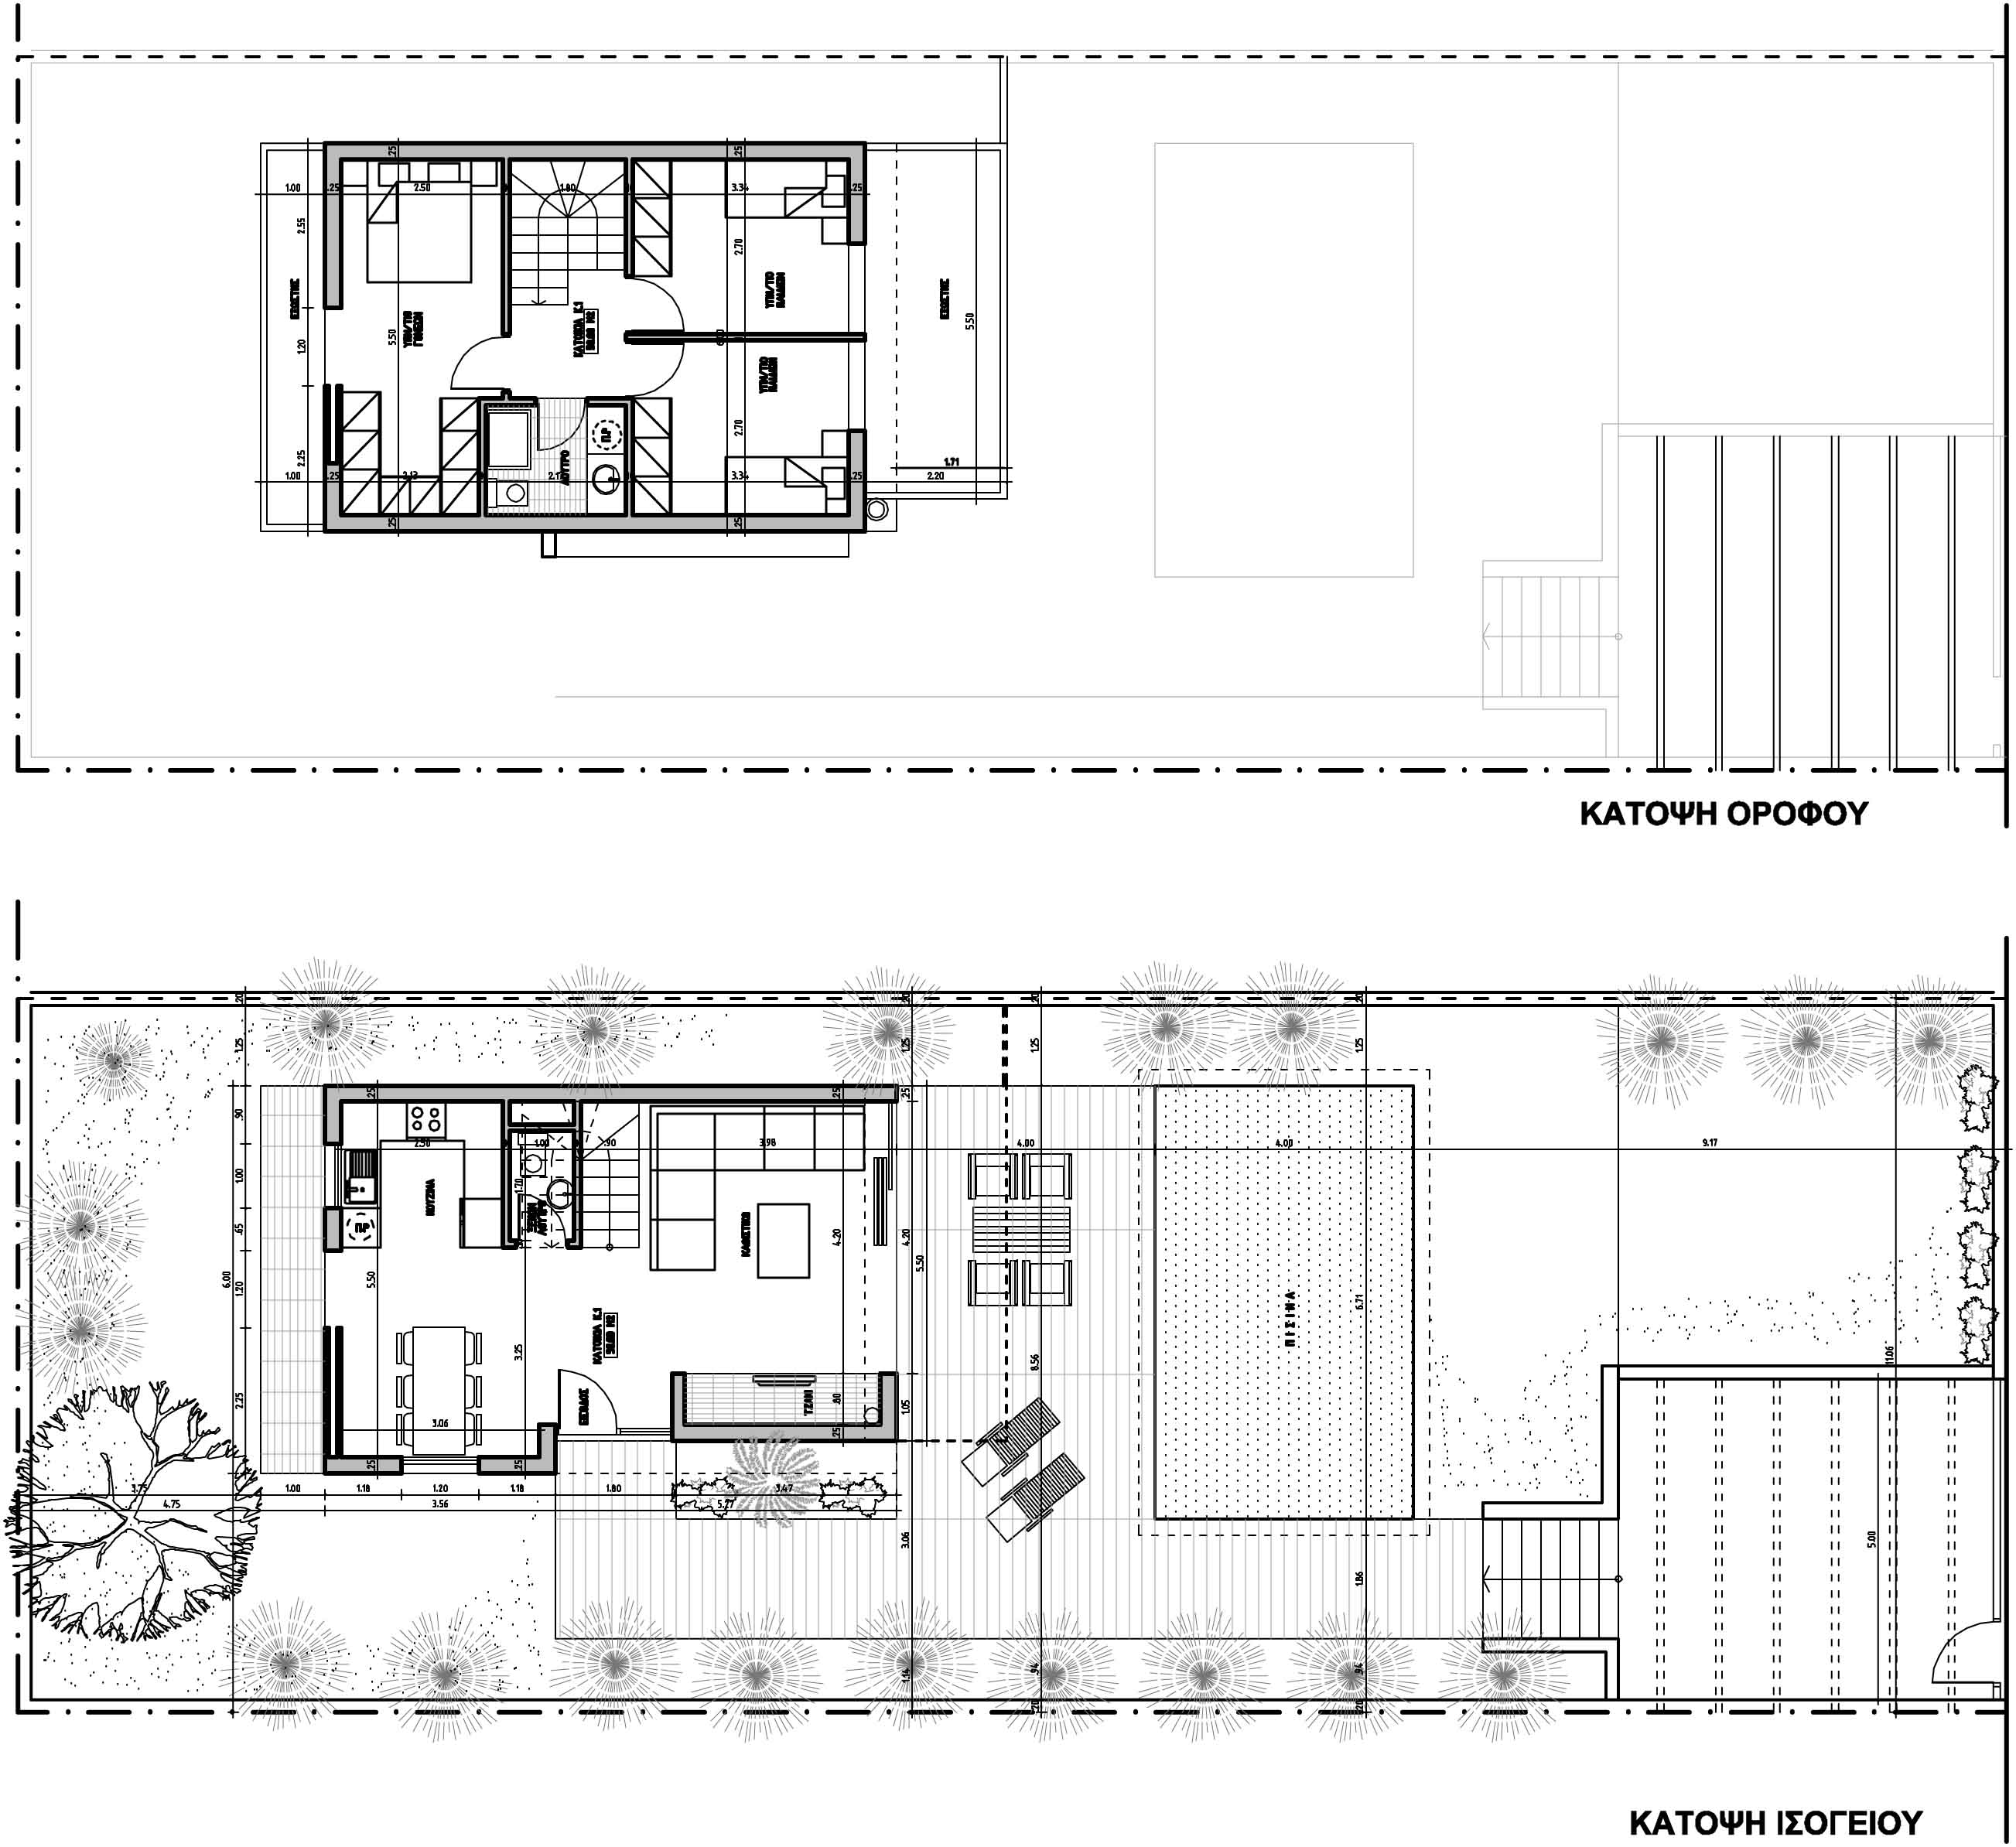 Μ4 διώροφη μονοκατοικία σύμμεικτη μεταλλική κατασκευή ολοκληρωμένη κατασκευή από 730 € / μ2